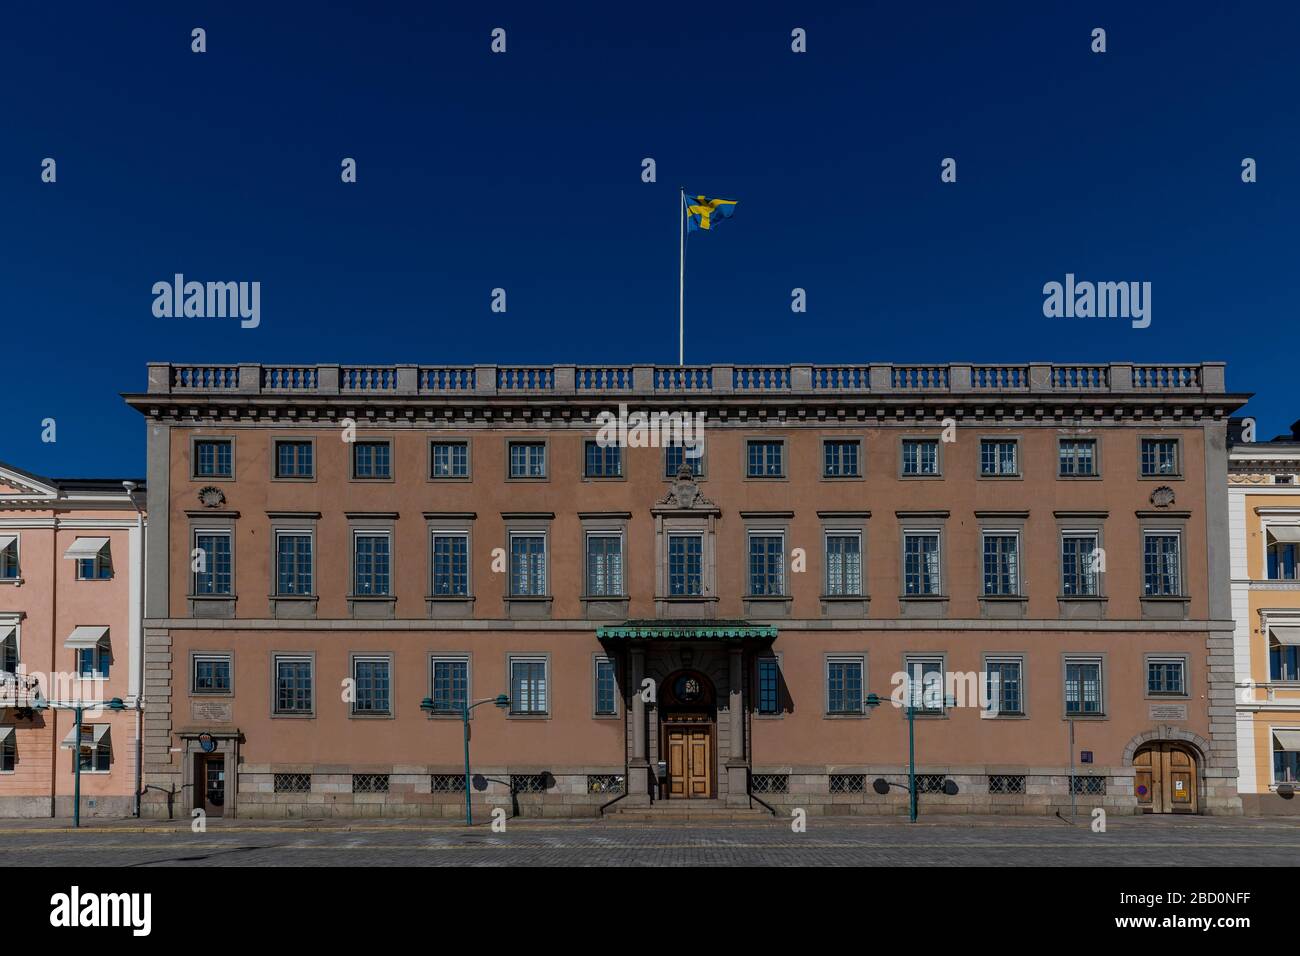 La embajada sueca en Helsinki está situada junto al palacio ceremonial del presidente. La ubicación subraya una buena relación entre dos países. Foto de stock